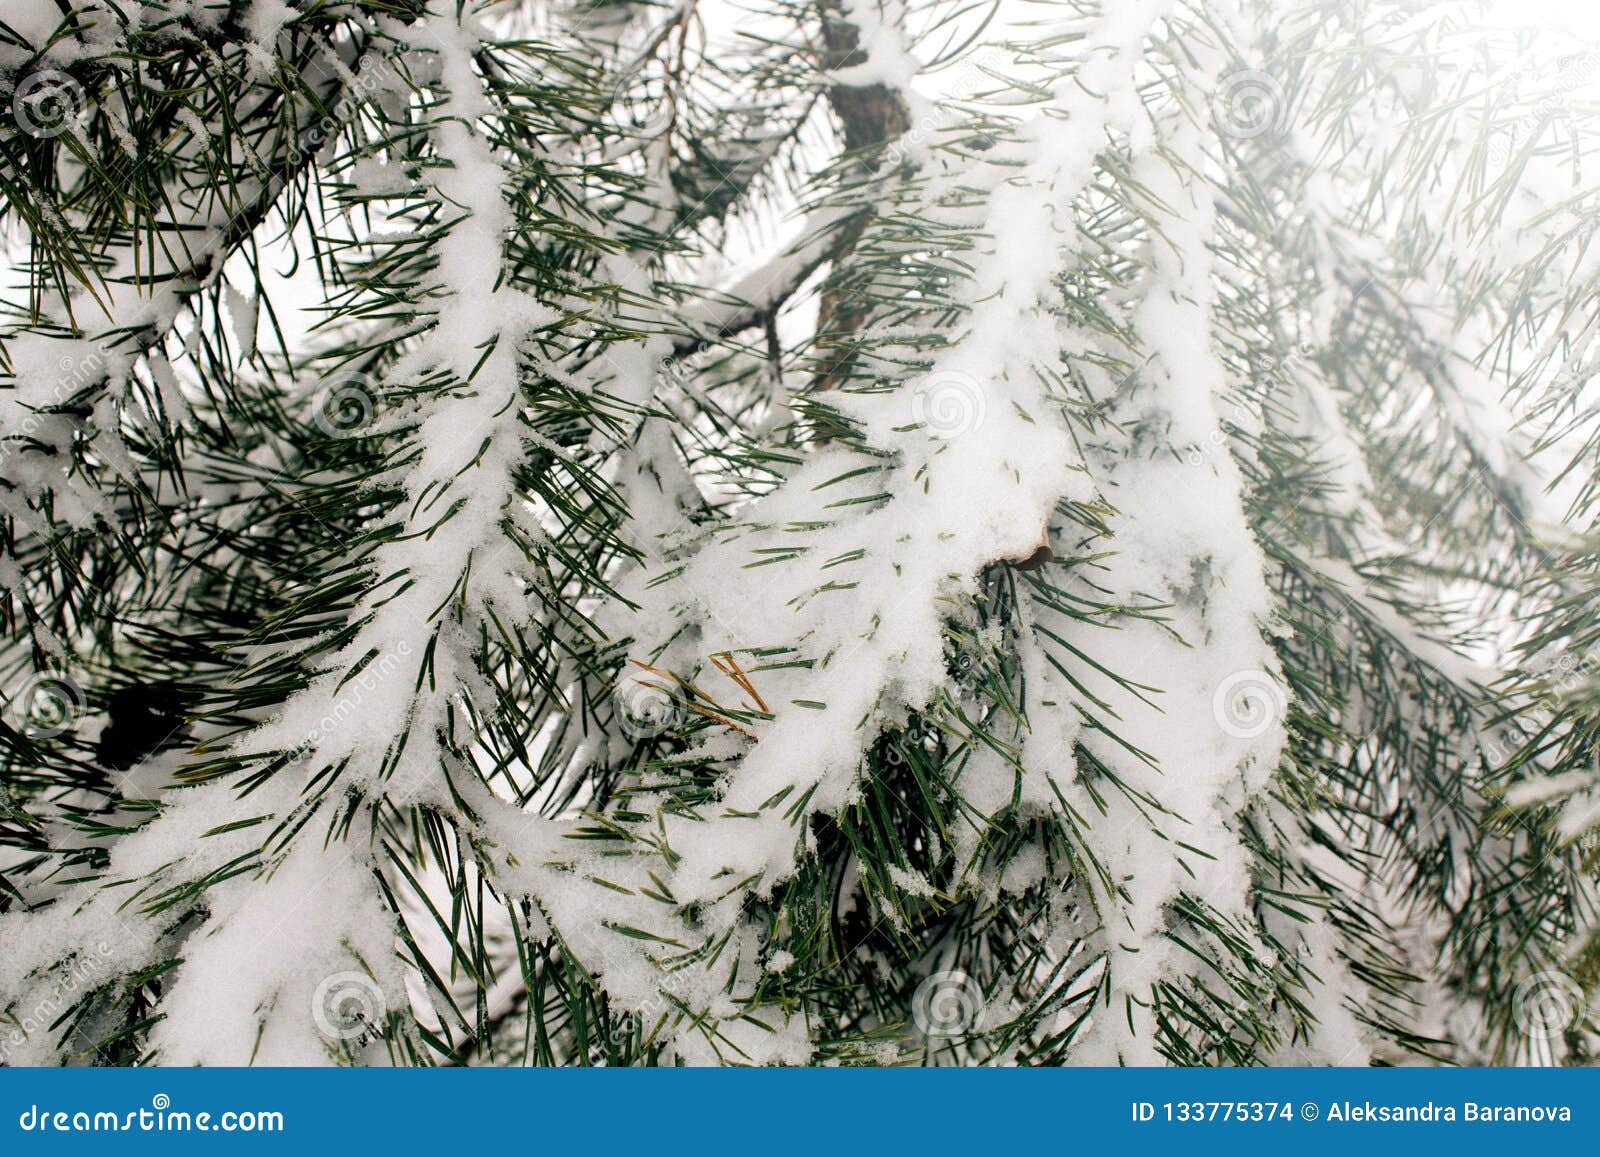 De natuurlijke achtergrond met pijnboomtak in de sneeuw, de winter is komend concept, exemplaarruimte